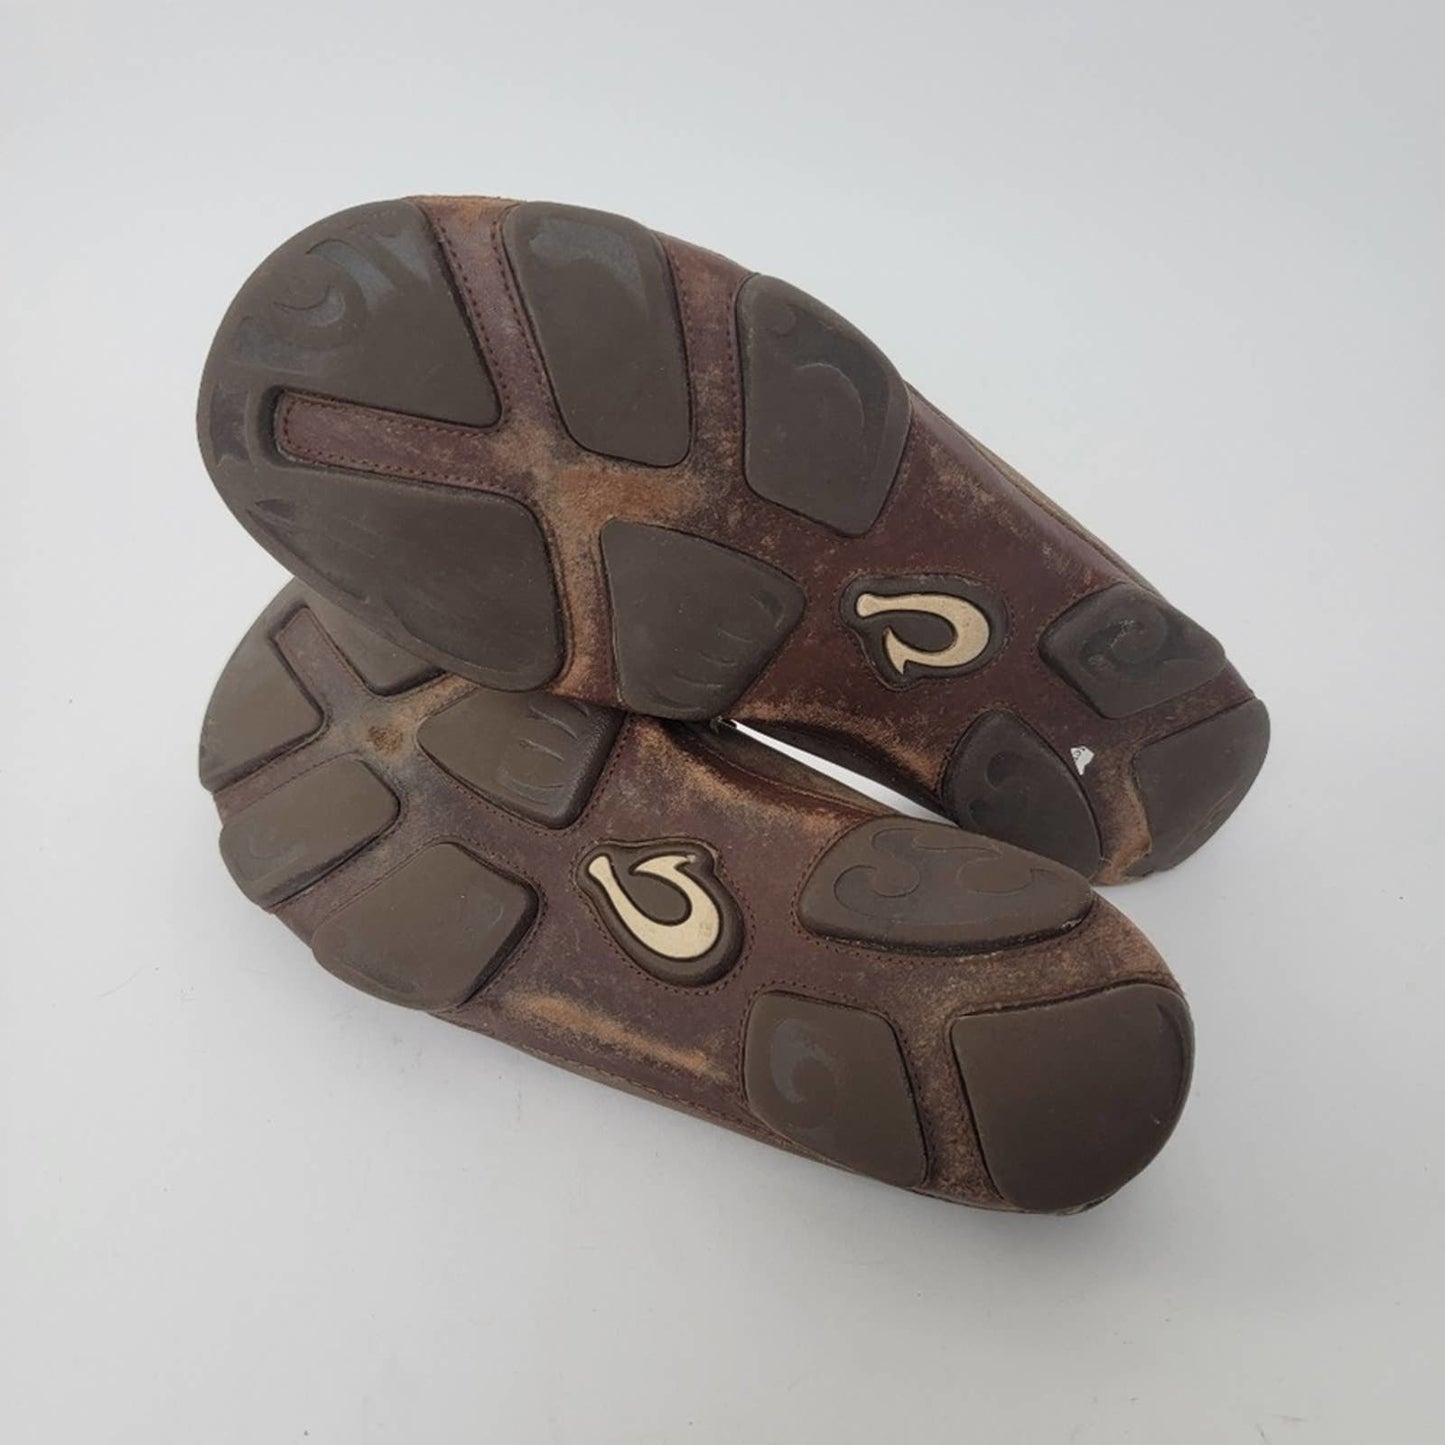 Olukai Moloa Leather Slip On Loafers - 15